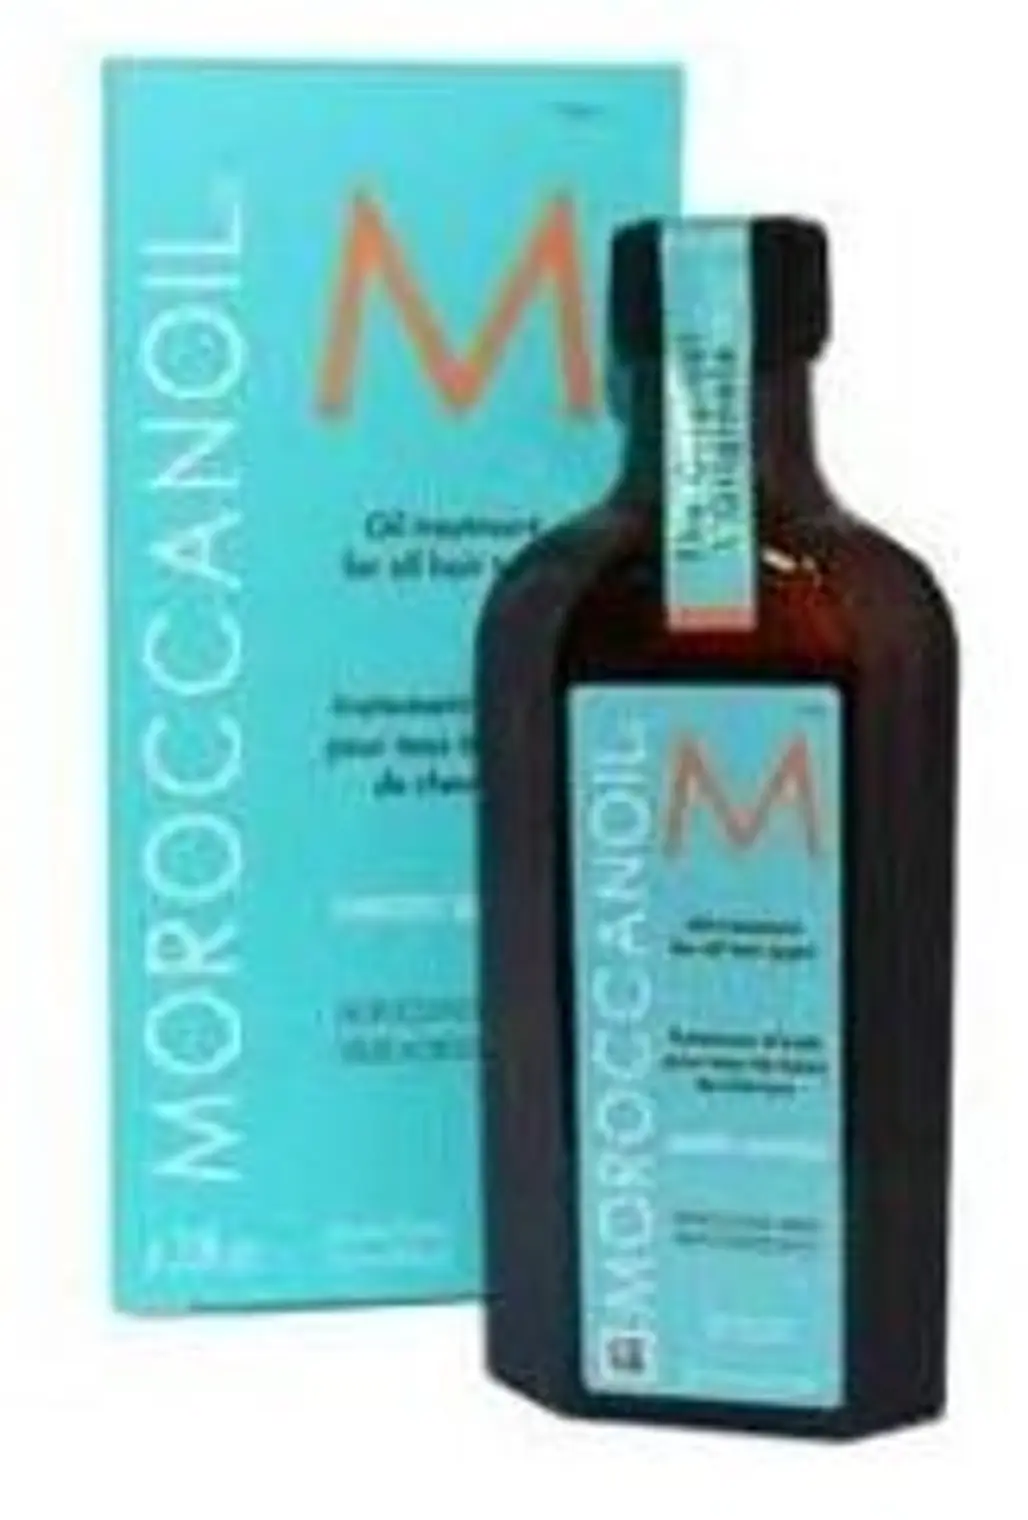 Moroccanoil Oil Treatment